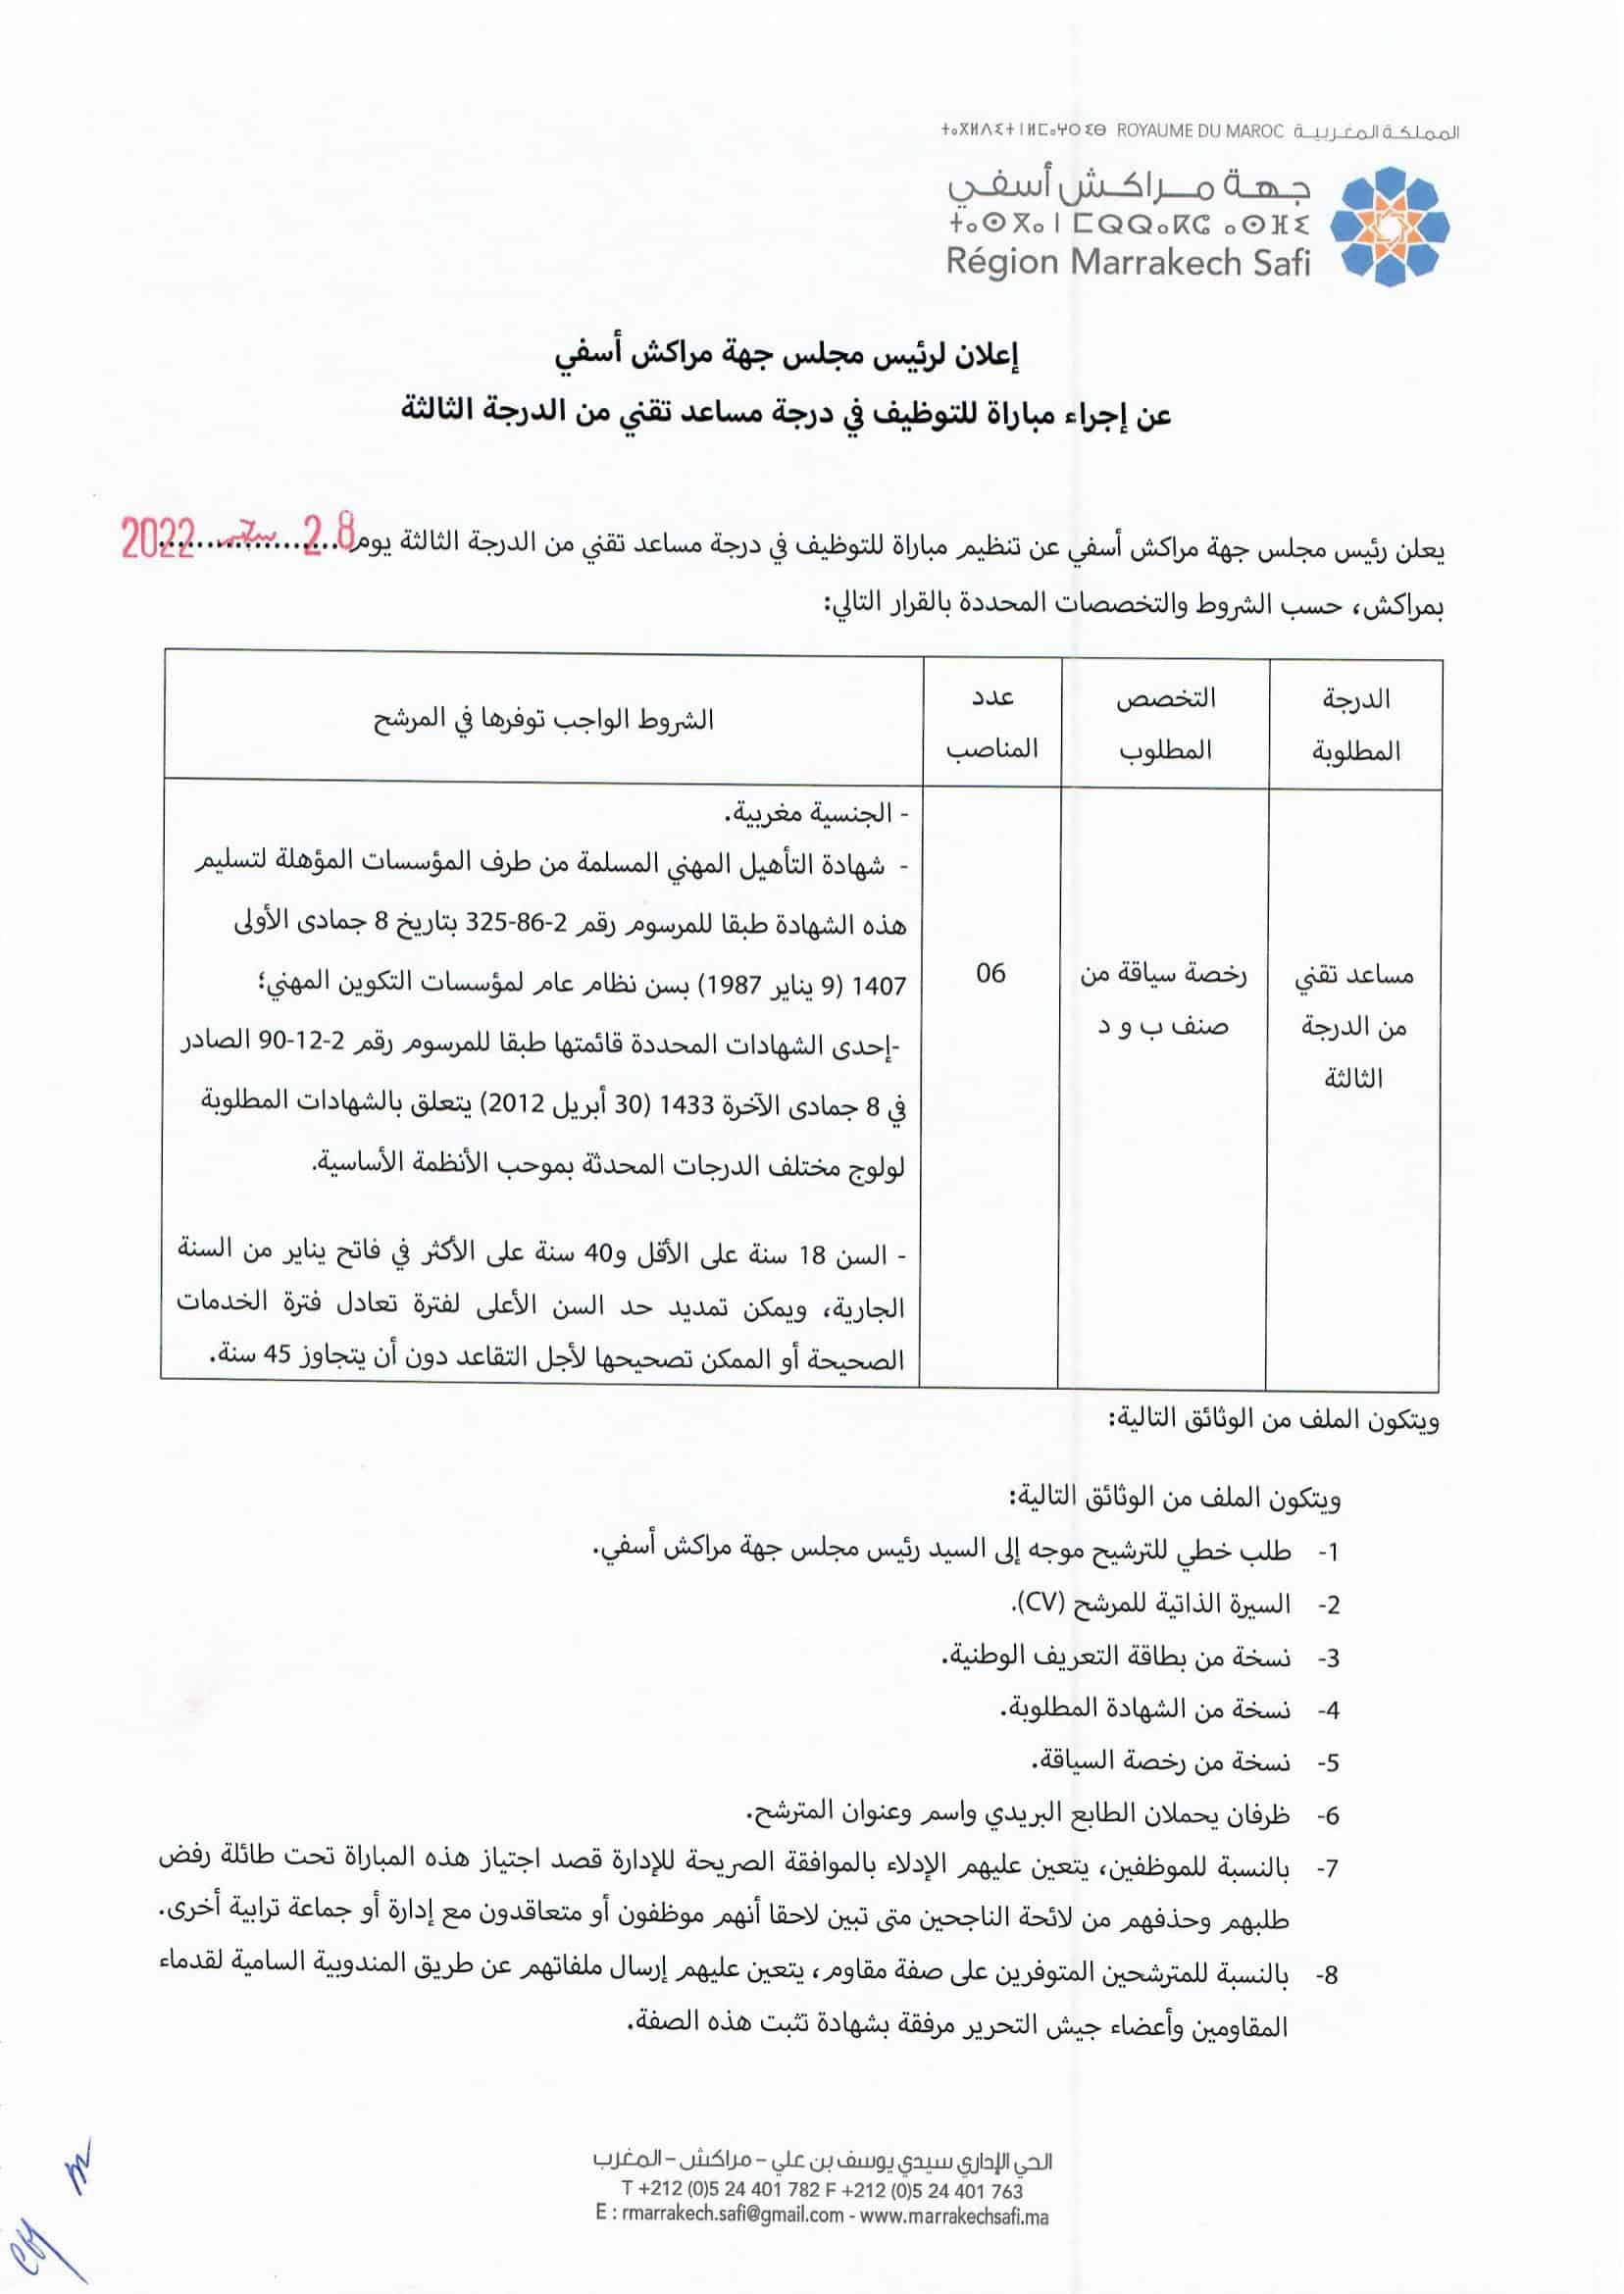 nomFichier5134 1 Concours Conseil Régional de Marrakech Safi 2022 (6 Postes)